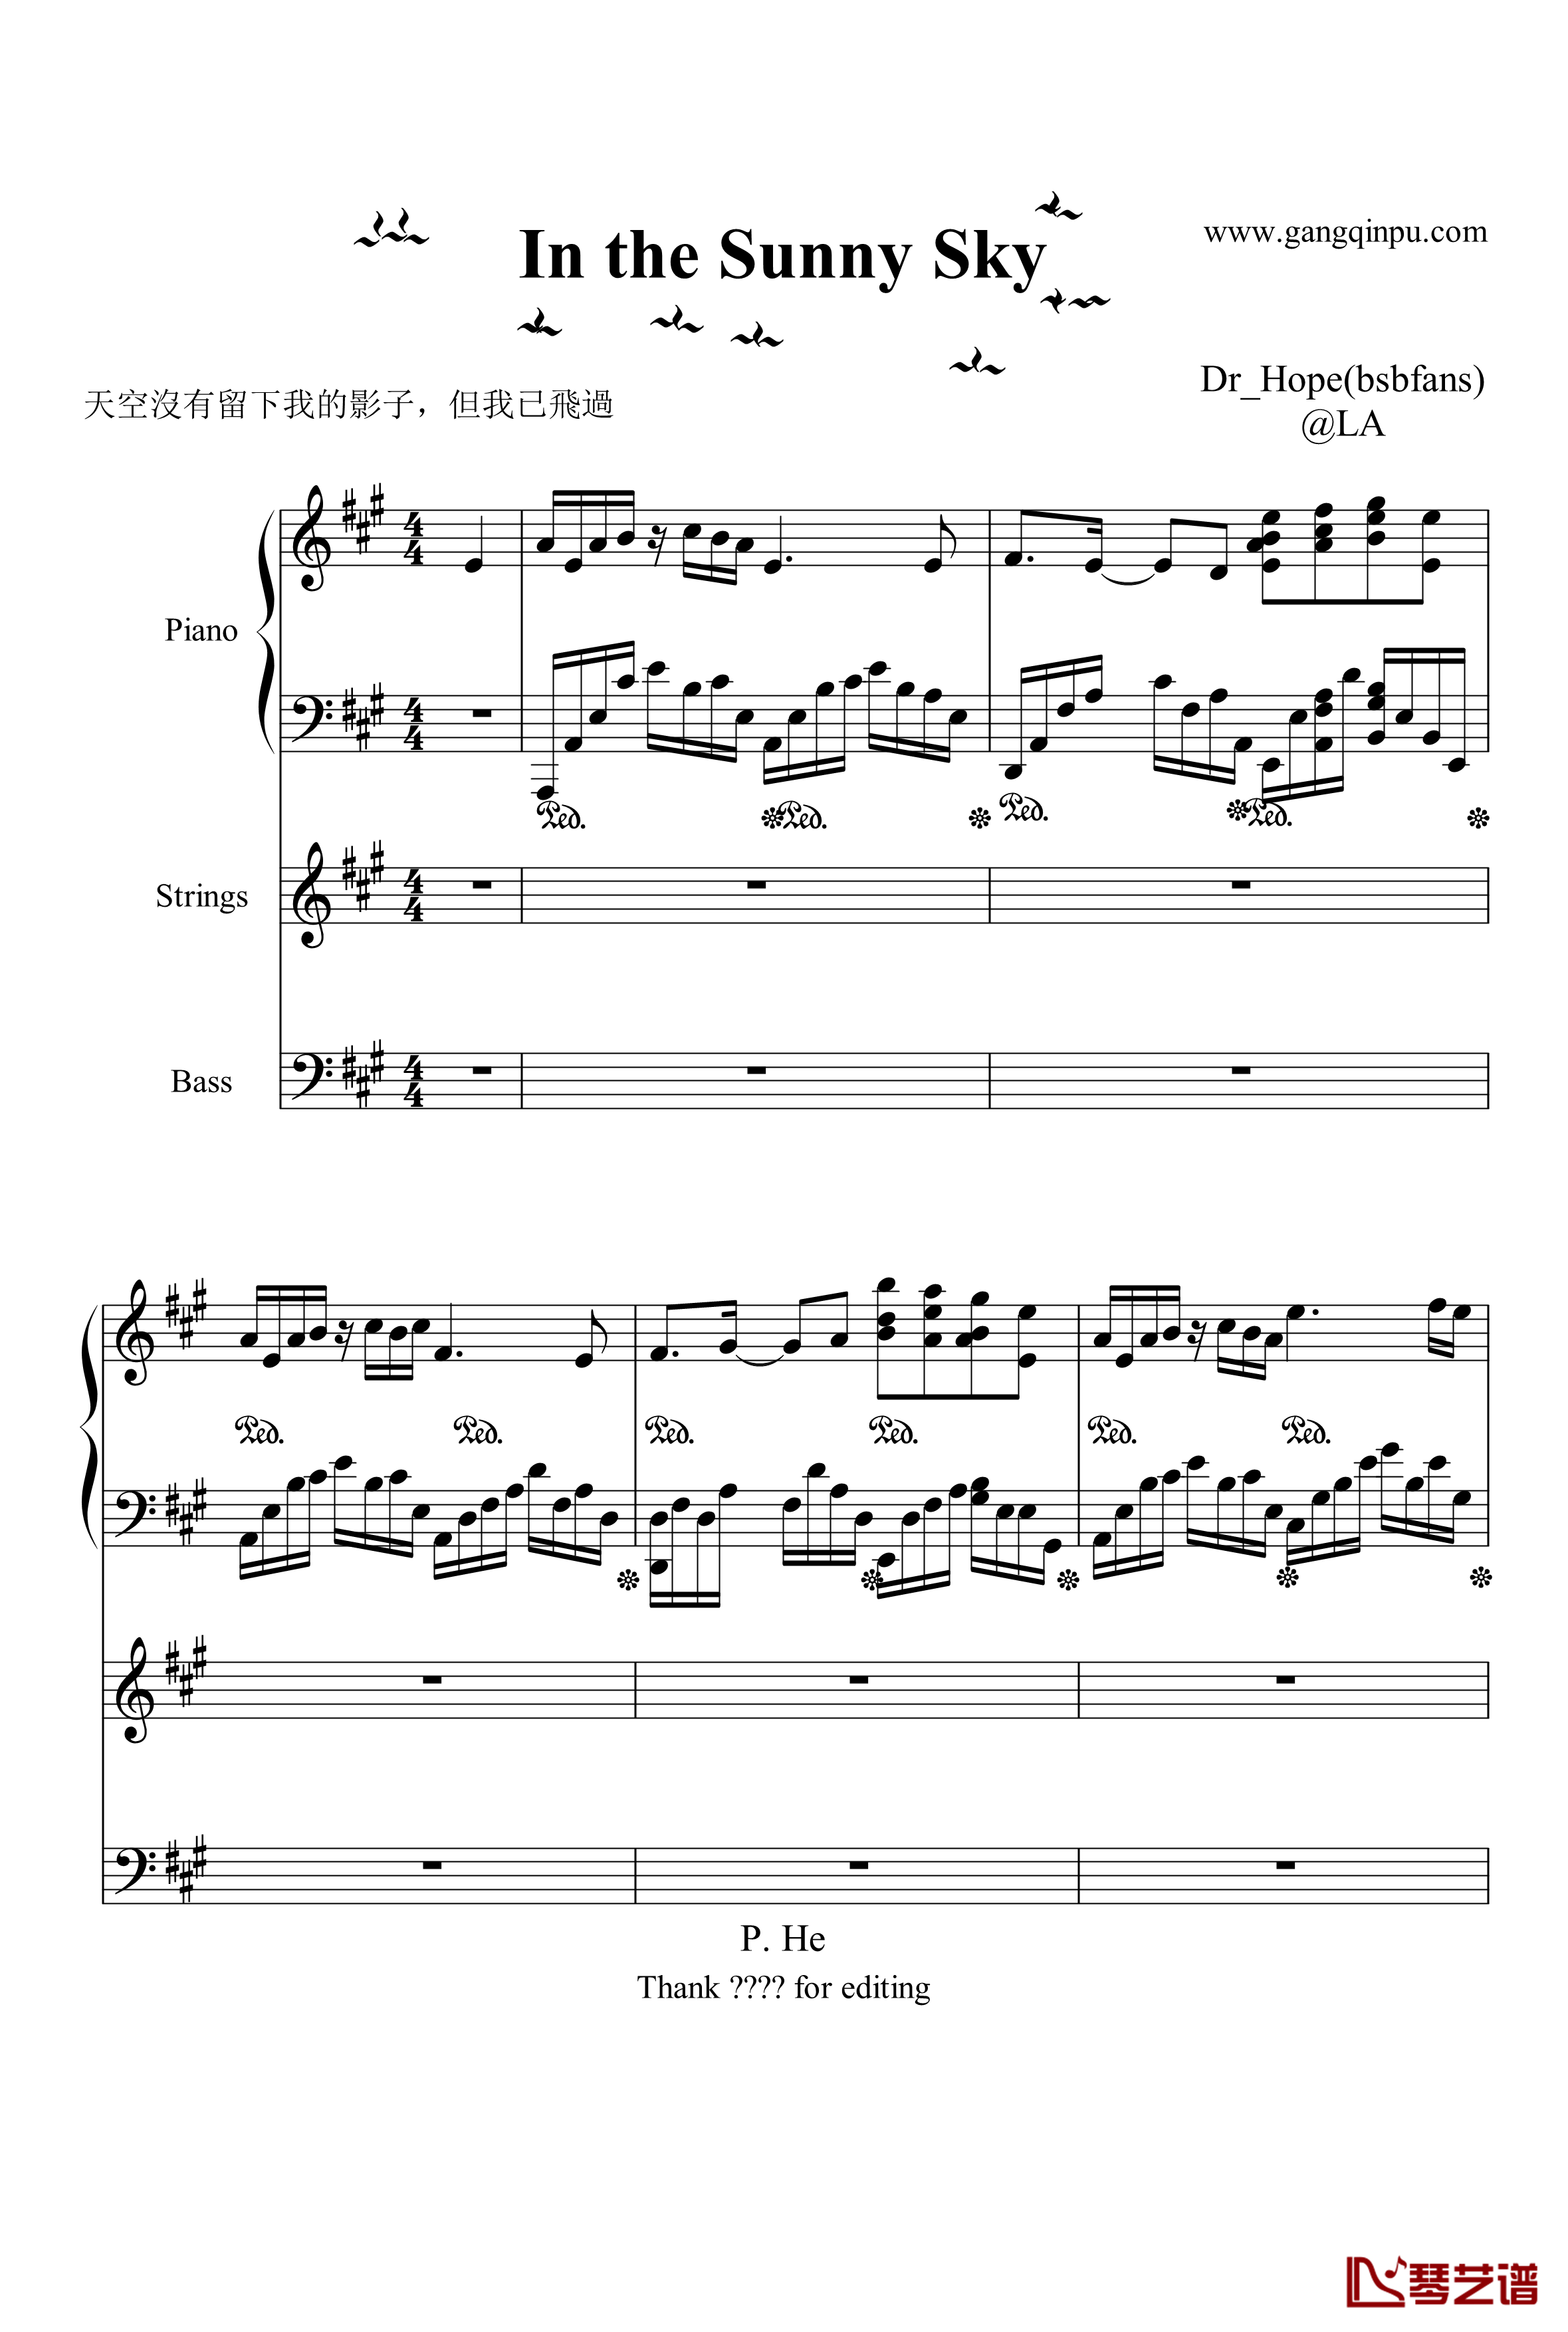 歌剧魅影插曲钢琴谱-序曲-萨拉布莱曼1